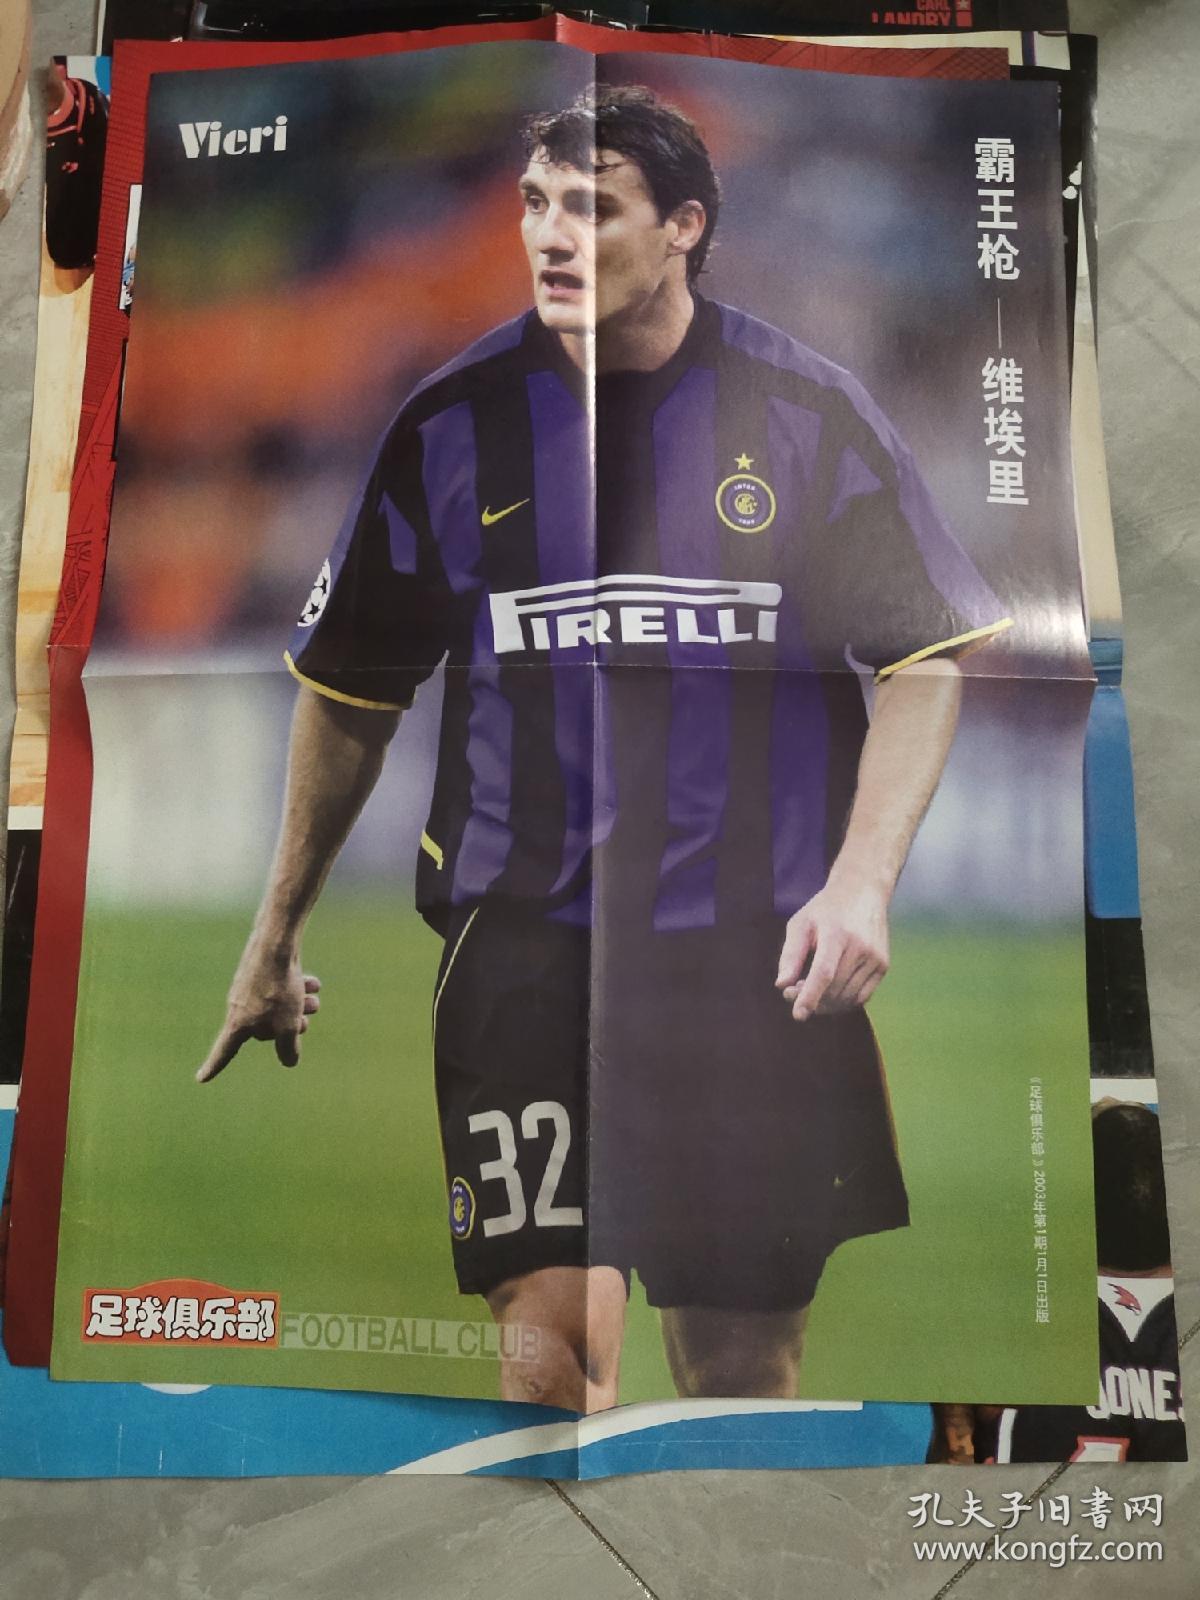 足球俱乐部双面4开海报(2003/1/1第1期出版)曼联全家福+霸王枪维埃里，观图下单不争议。